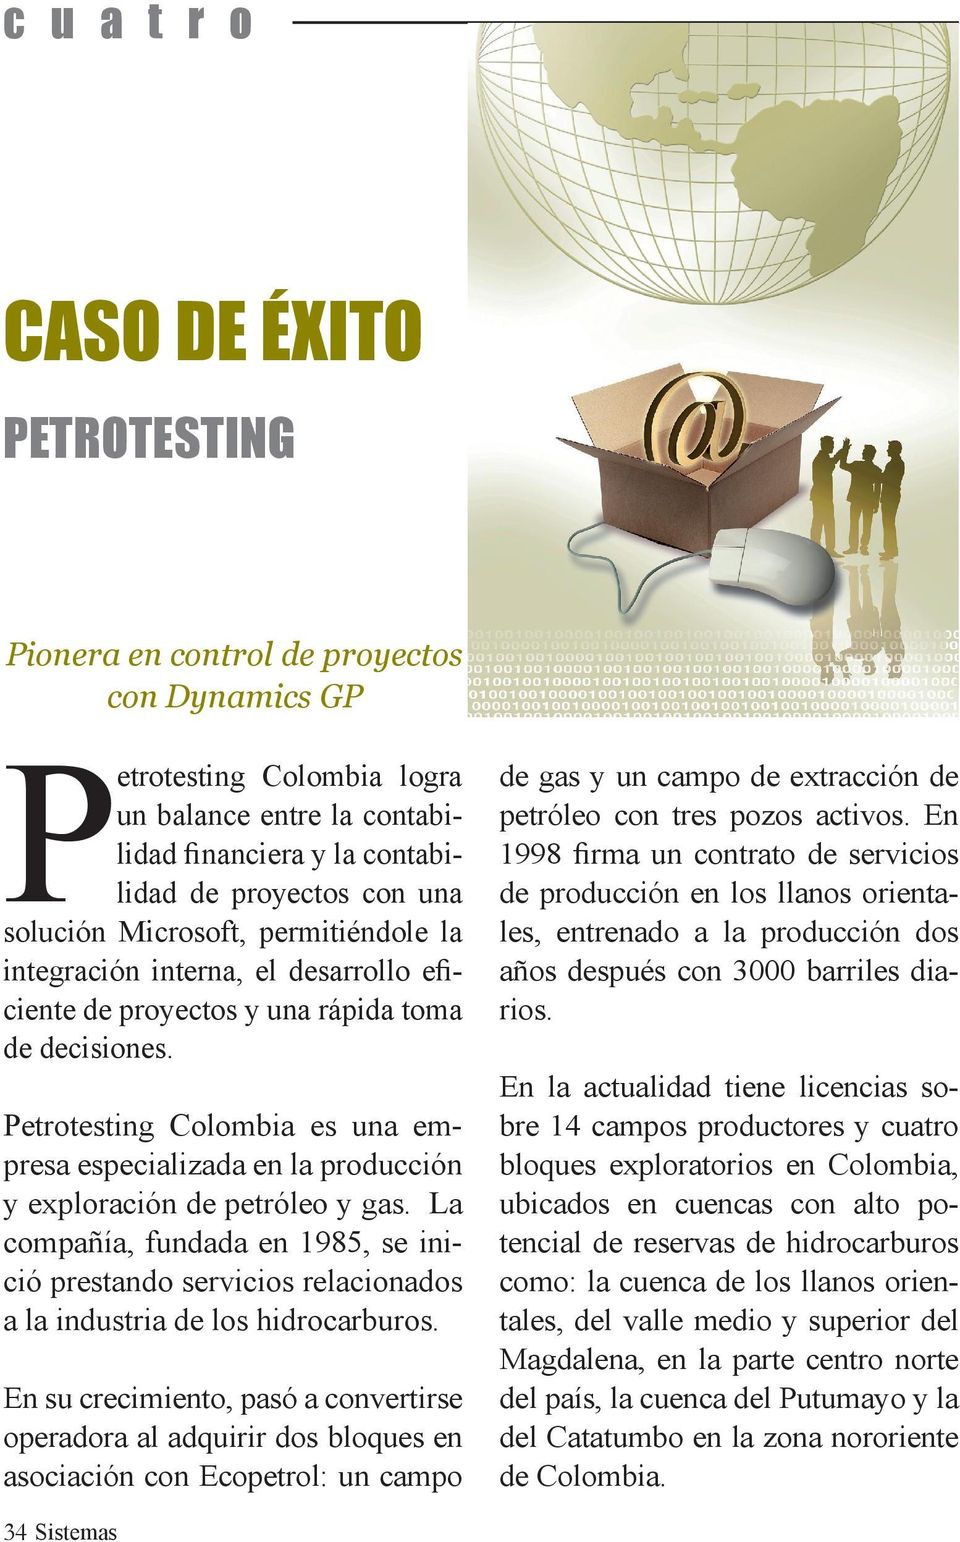 Petrotesting Colombia es una empresa especializada en la producción y exploración de petróleo y gas.